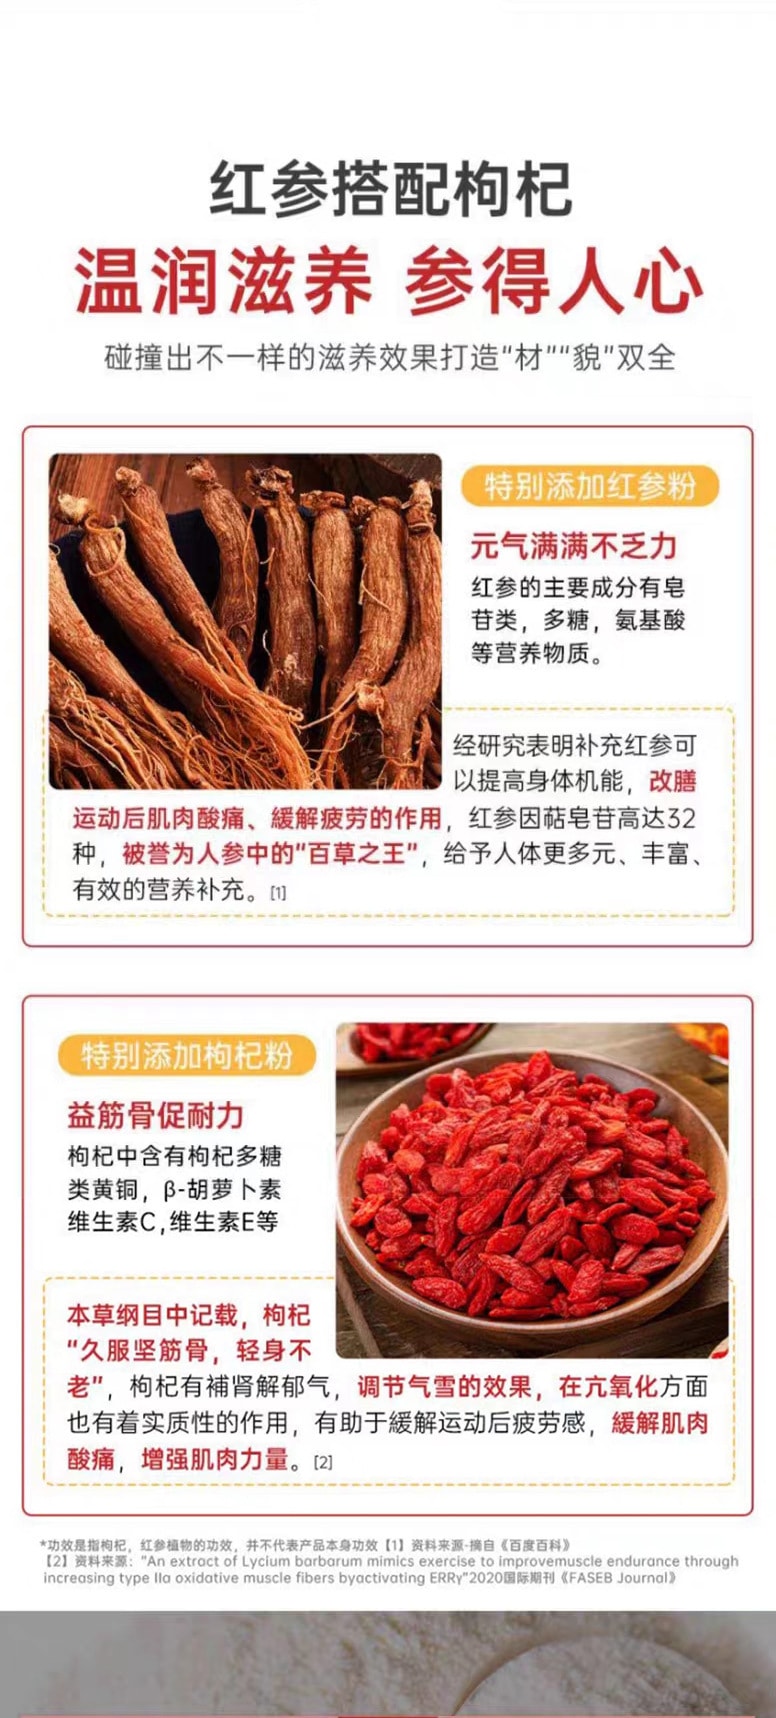 中国 鸿恩本草 红参多维片 32克 (0.8克*40粒) 每片添加红参 16mg 运动营养保健食品